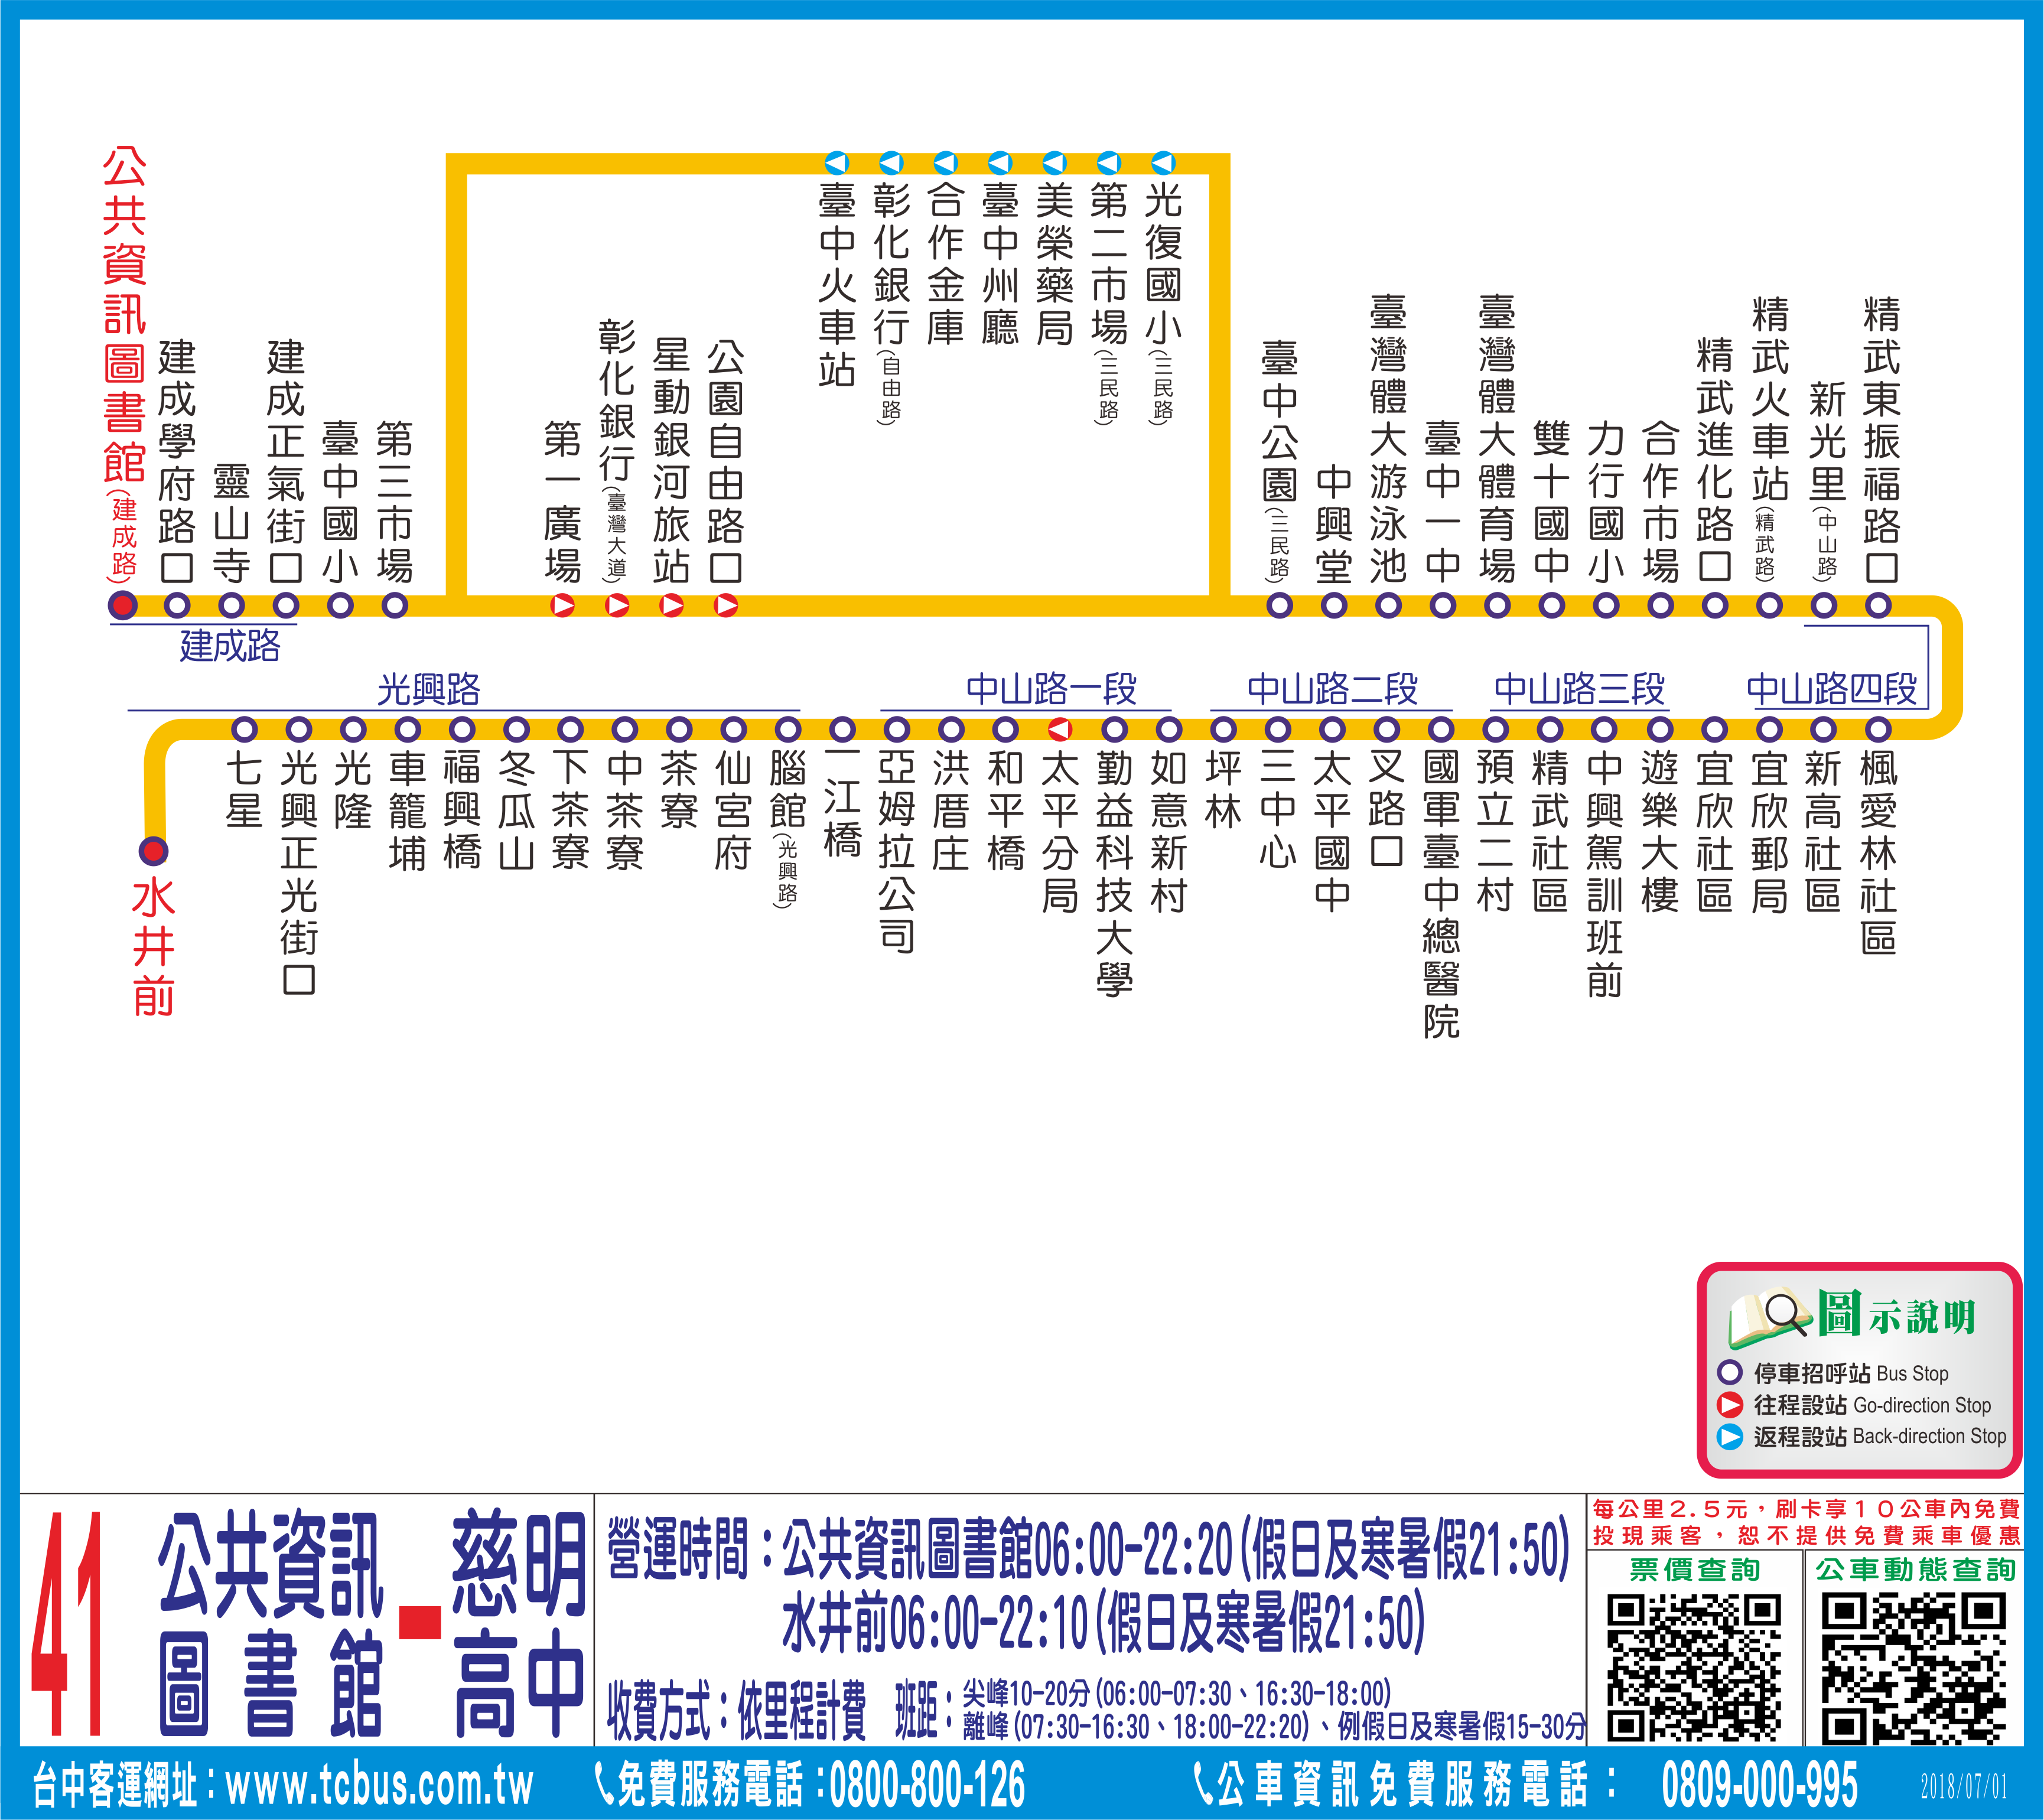 臺中市政府交通局-便民服務-線上查詢-市區公車路線圖